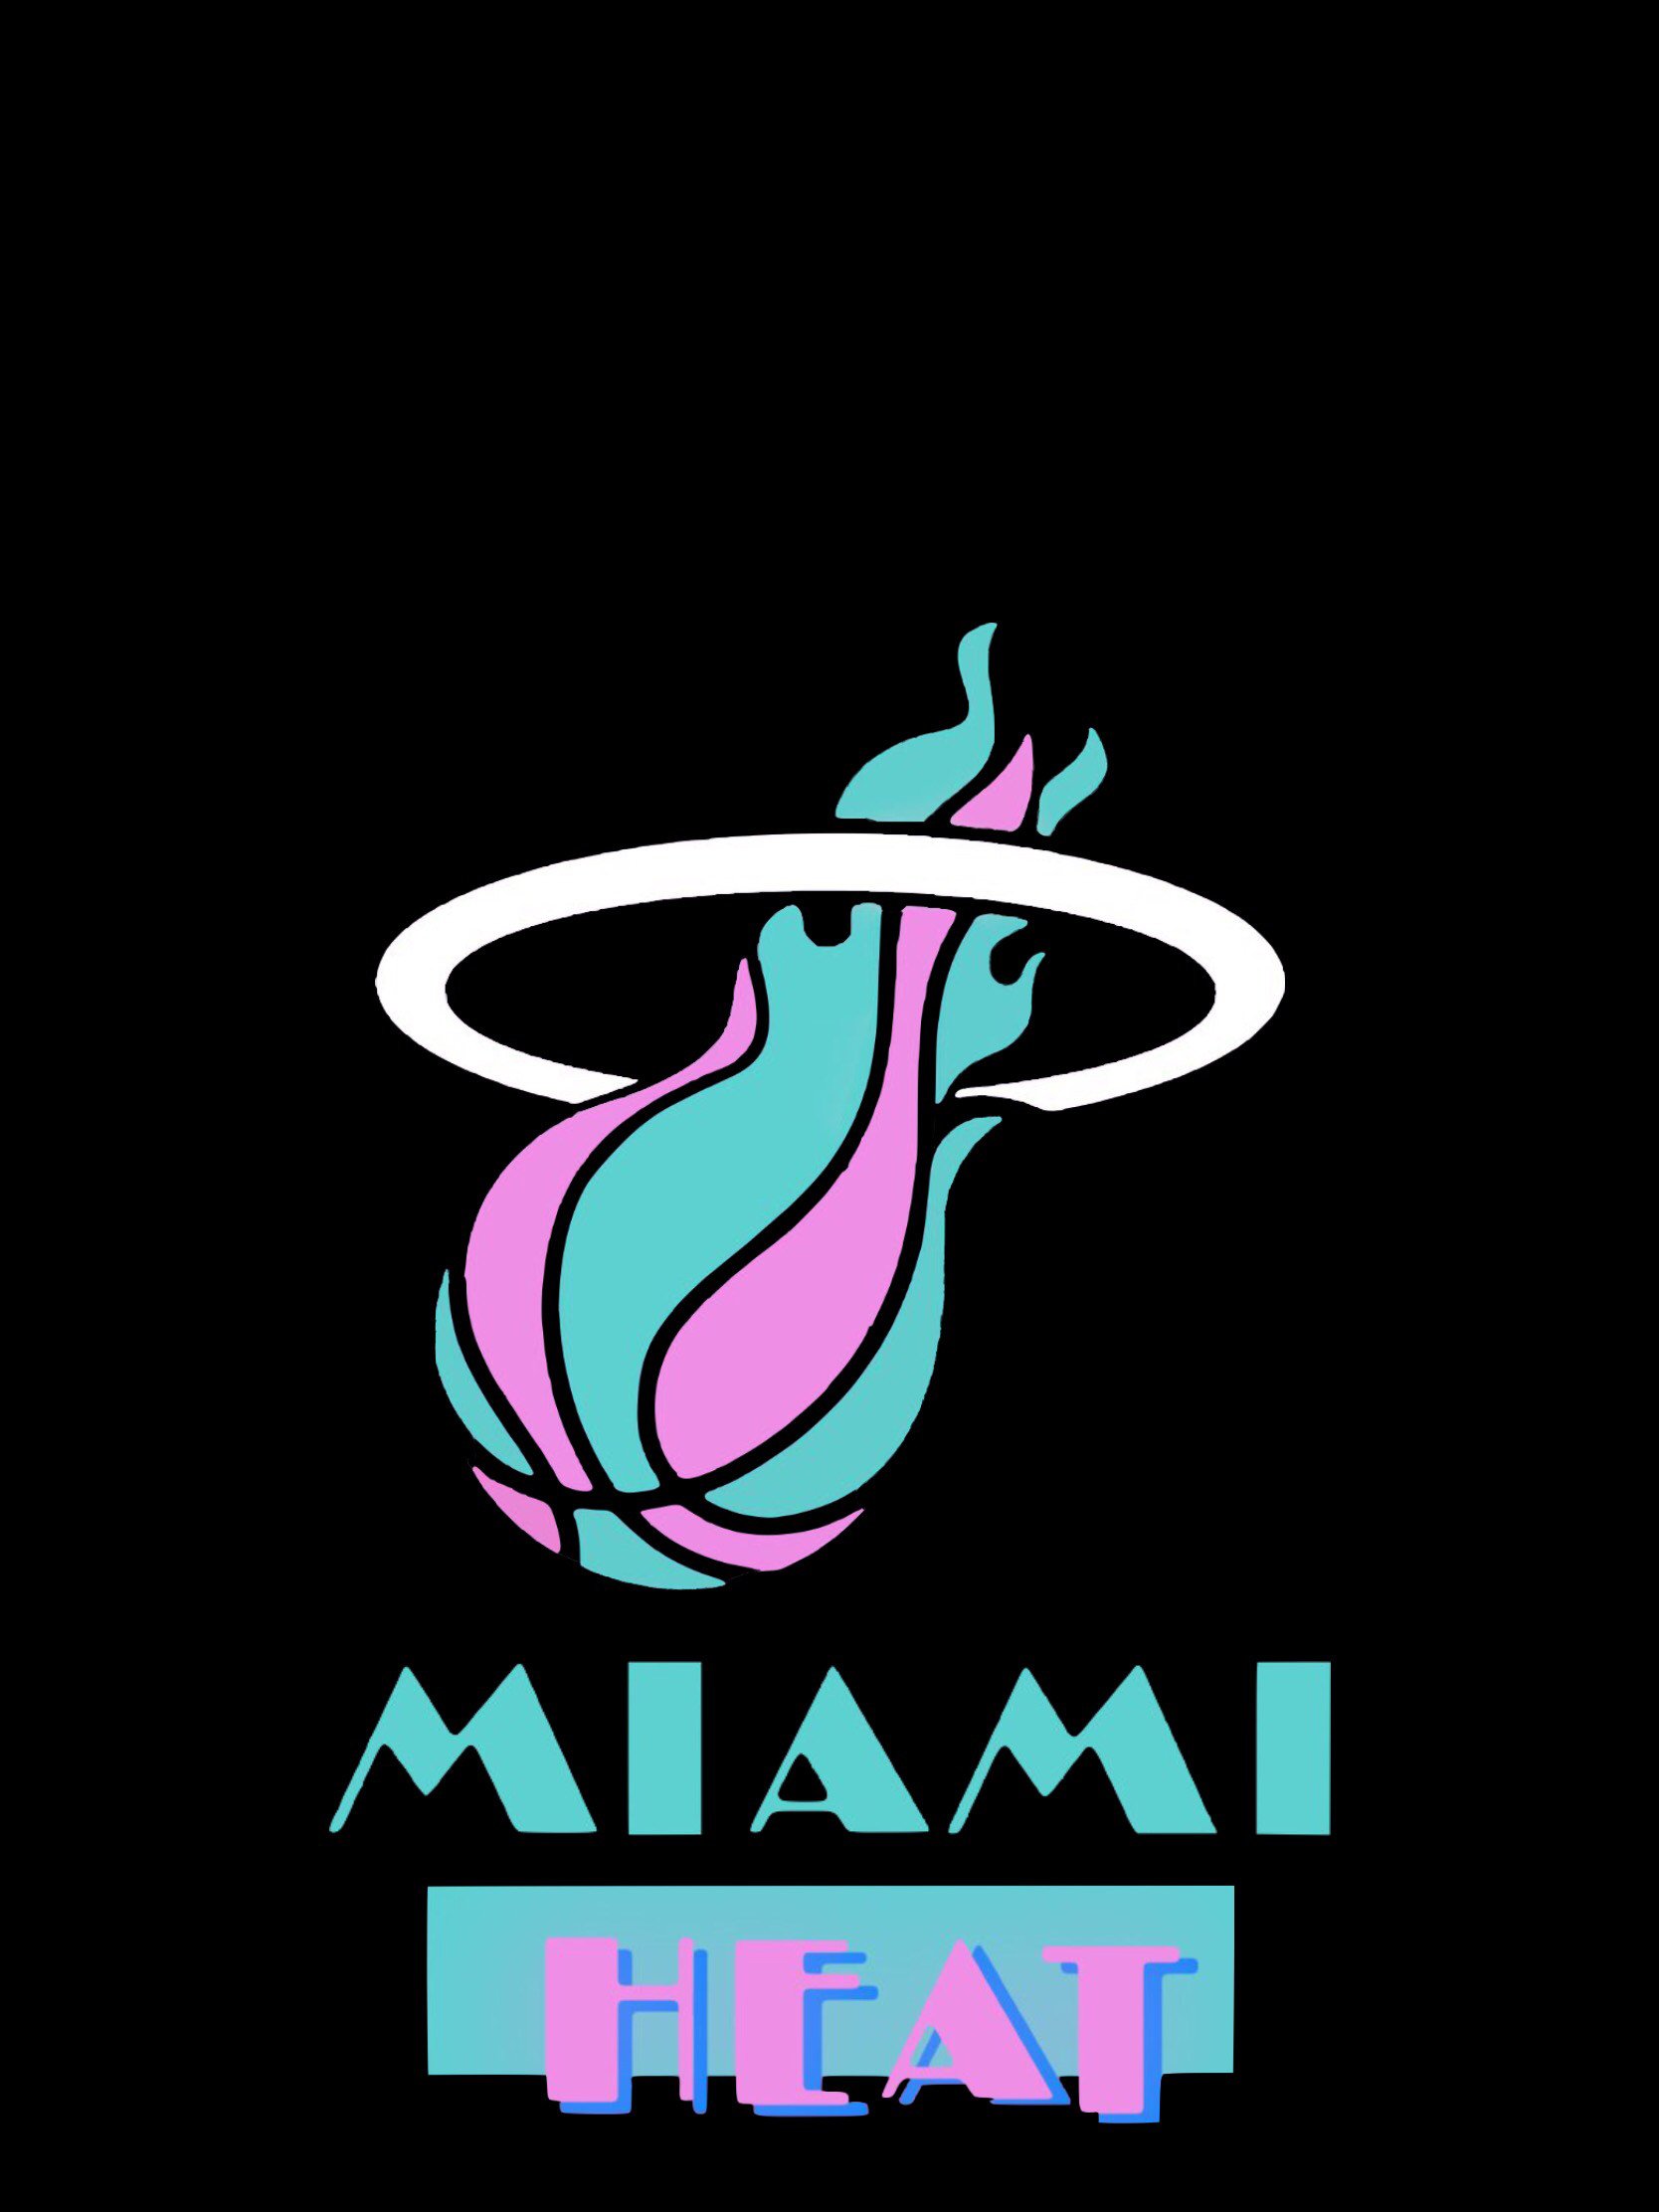 Miami heat in the miami vice font